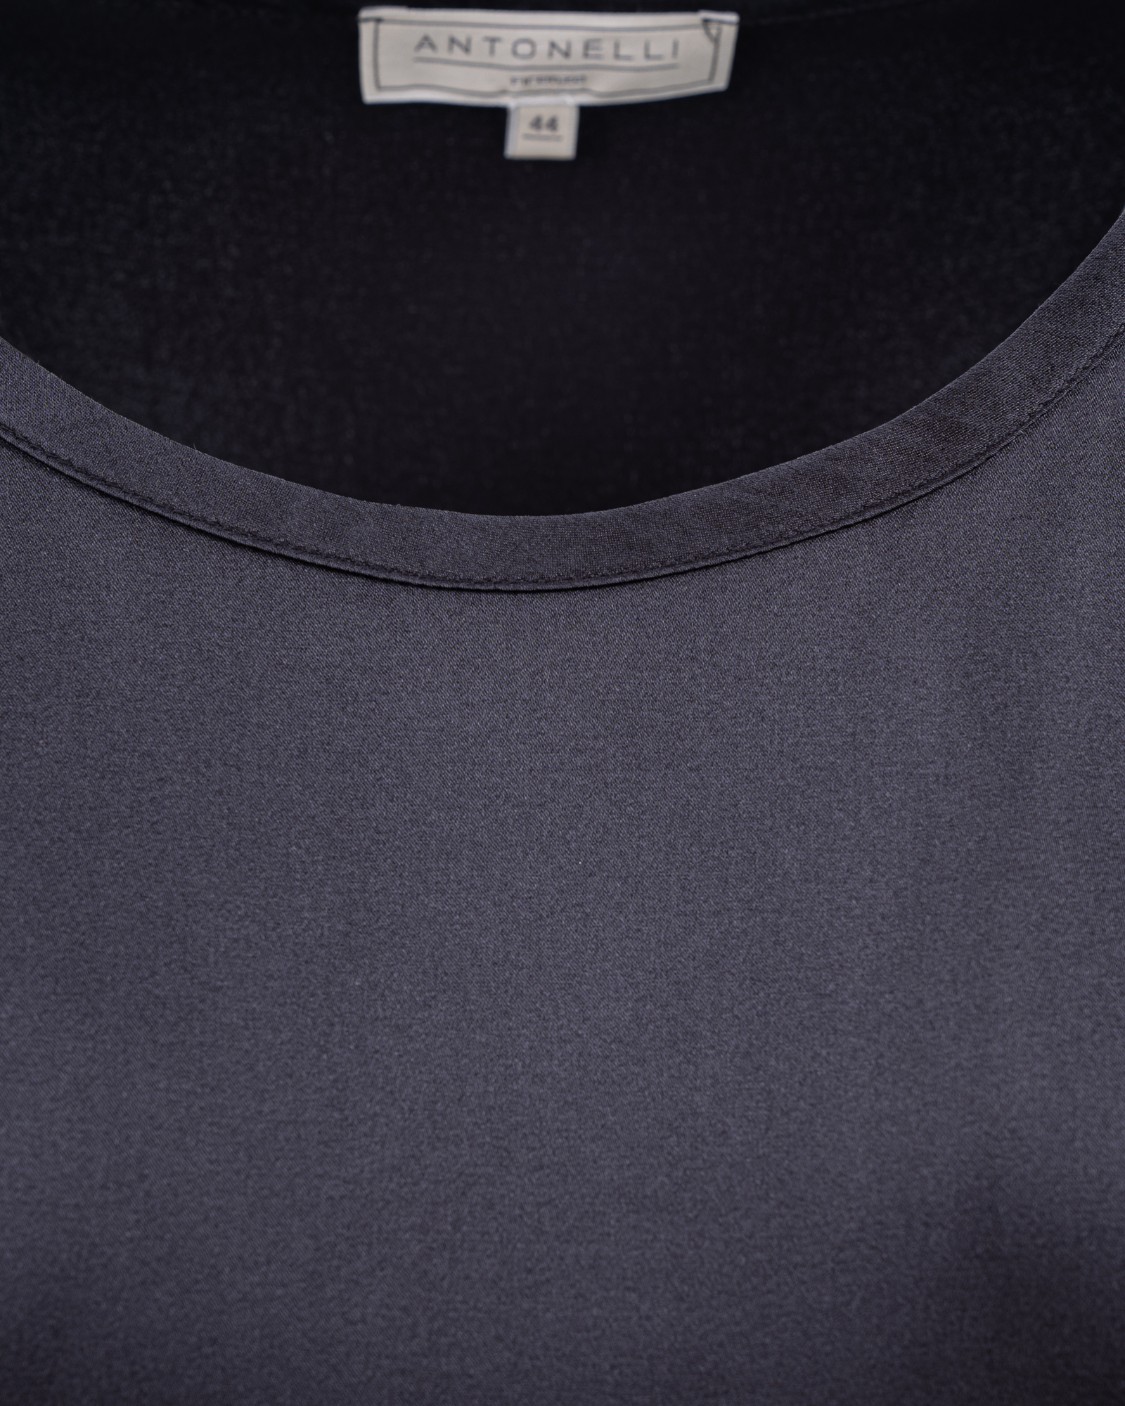 shop ANTONELLI Saldi T-shirt: Antonelli camicia "Ansaldo" in seta.
Collo a giro.
Maniche lunghe.
Vestibilità regolare.
Composizione: 94% Seta 6% Lycra.
Fabbricato in Italia.. ANSALDO D1687 251-999 number 5648214